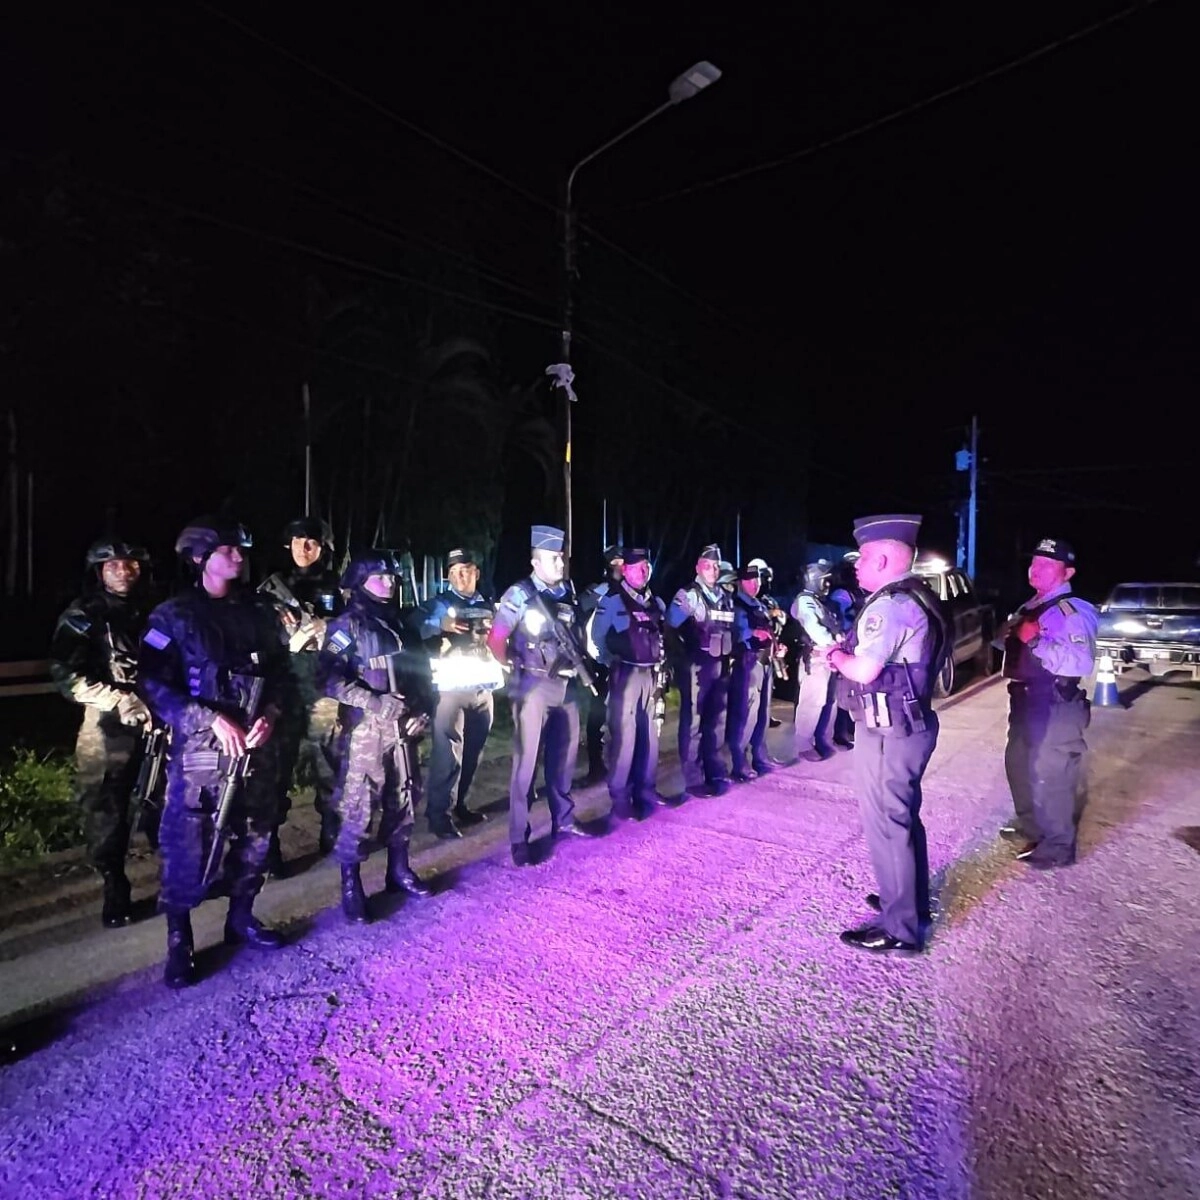 Policía Nacional realiza operativos nocturnos en el municipio de La Ceiba 02